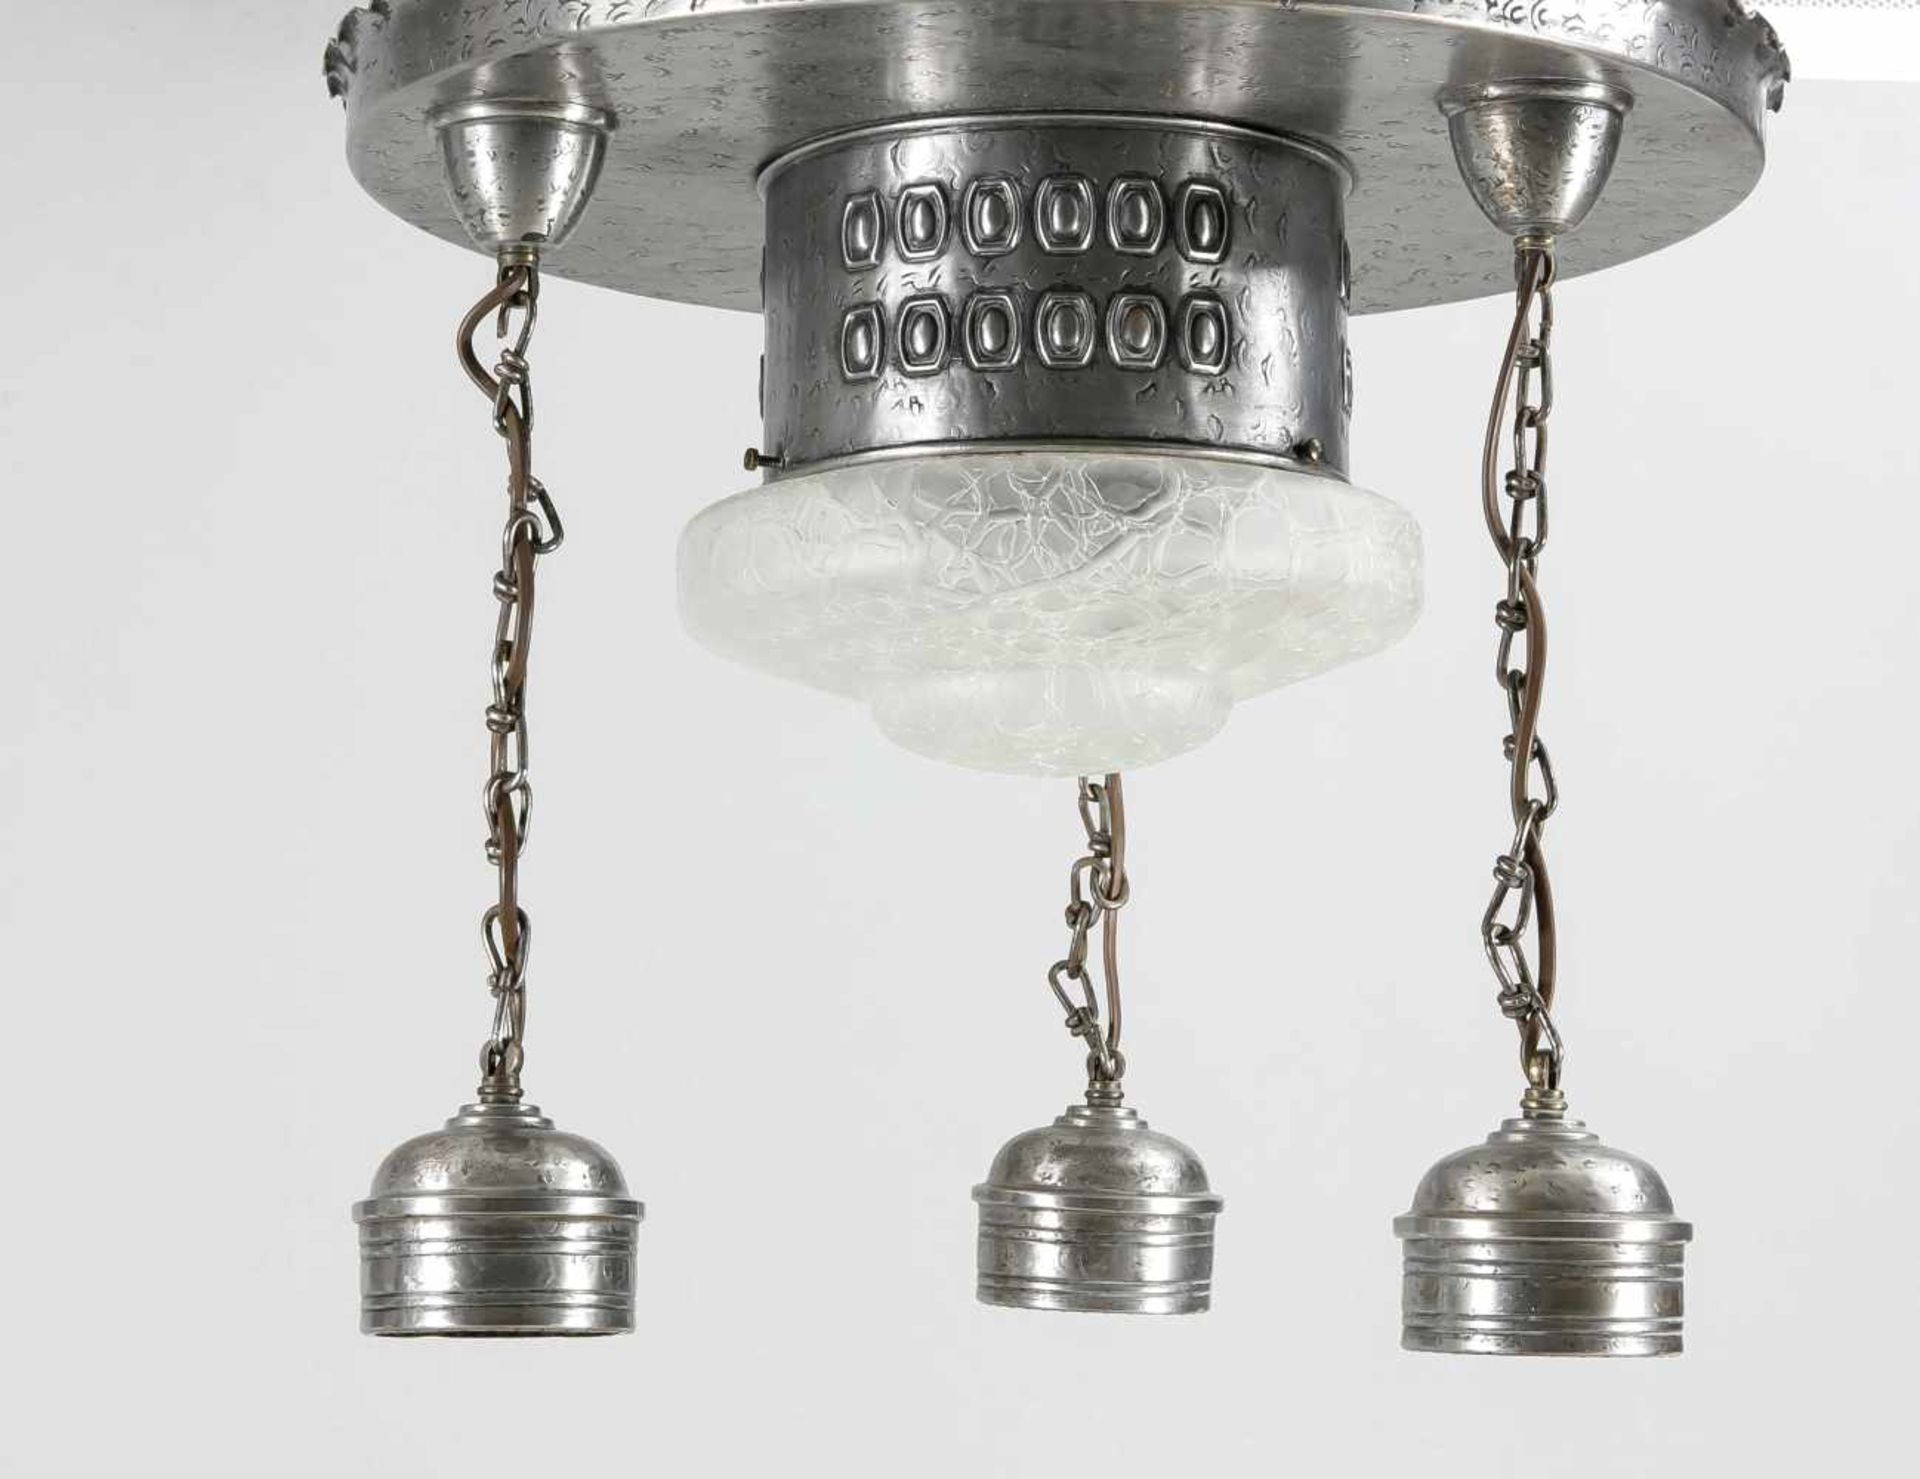 Art and Crafts-Deckenlampe um 1920, geprägtes Eisenblechgestell mit drei Lampenfassungenan Ketten, - Bild 2 aus 2